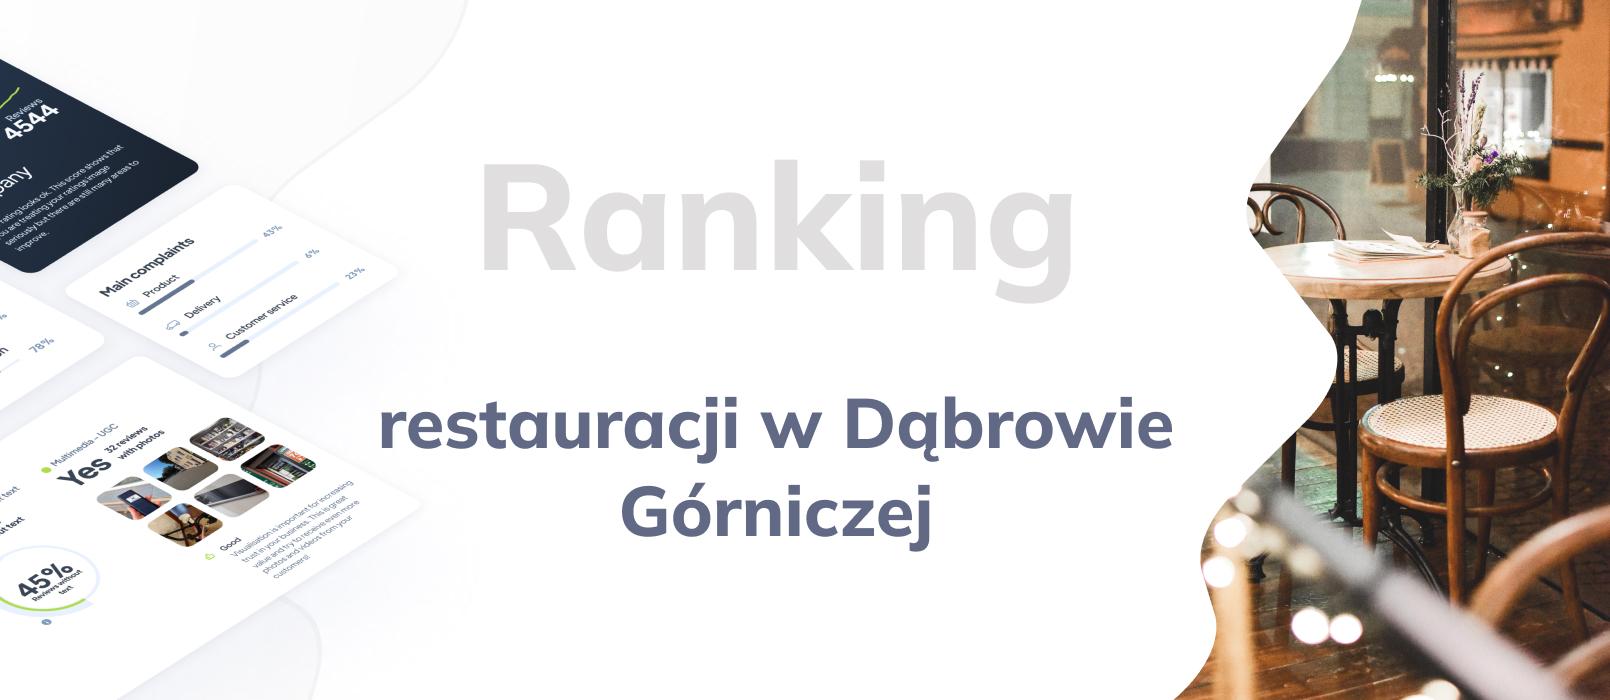 Restauracje w Dąbrowie Górniczej - ranking TOP 10